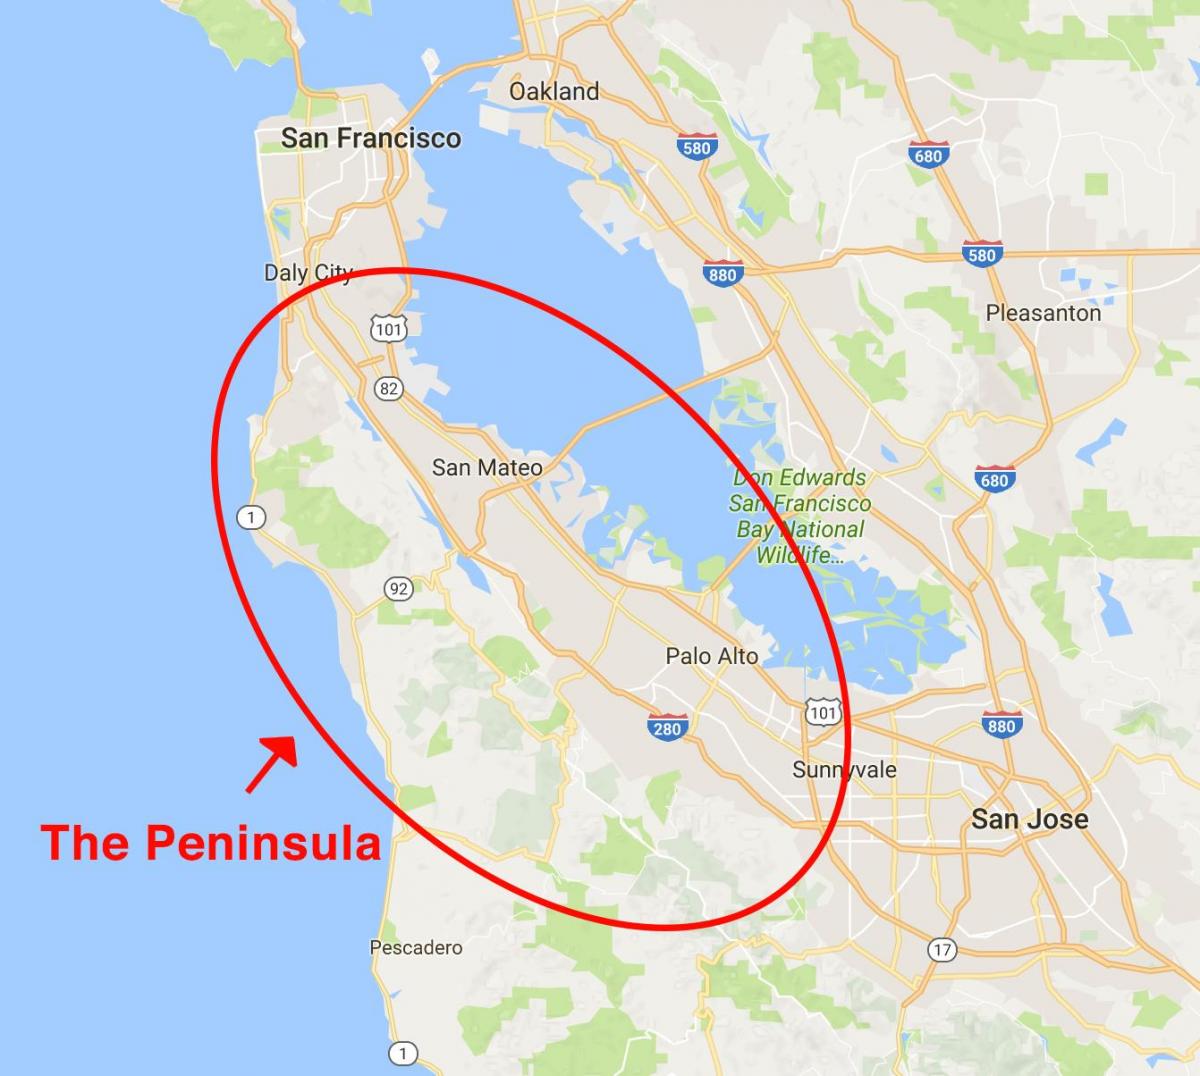 Mapa de la península de San Francisco 